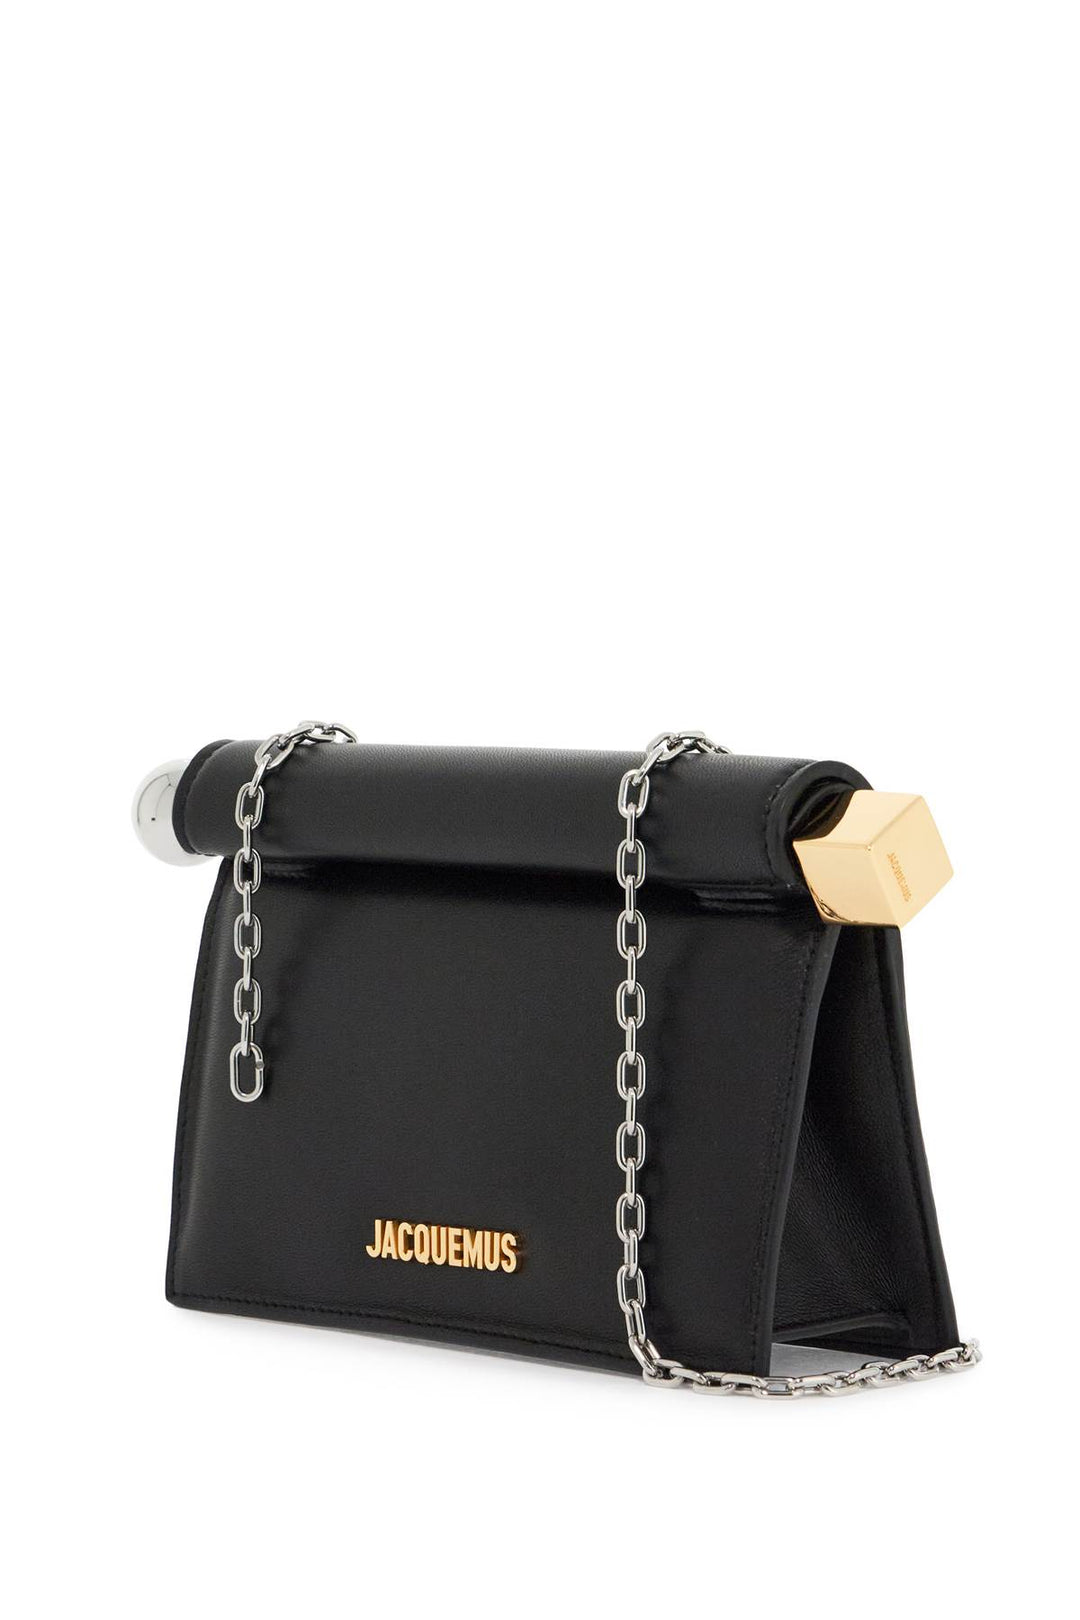 Jacquemus Mini Square Round Clutch Bag   Black